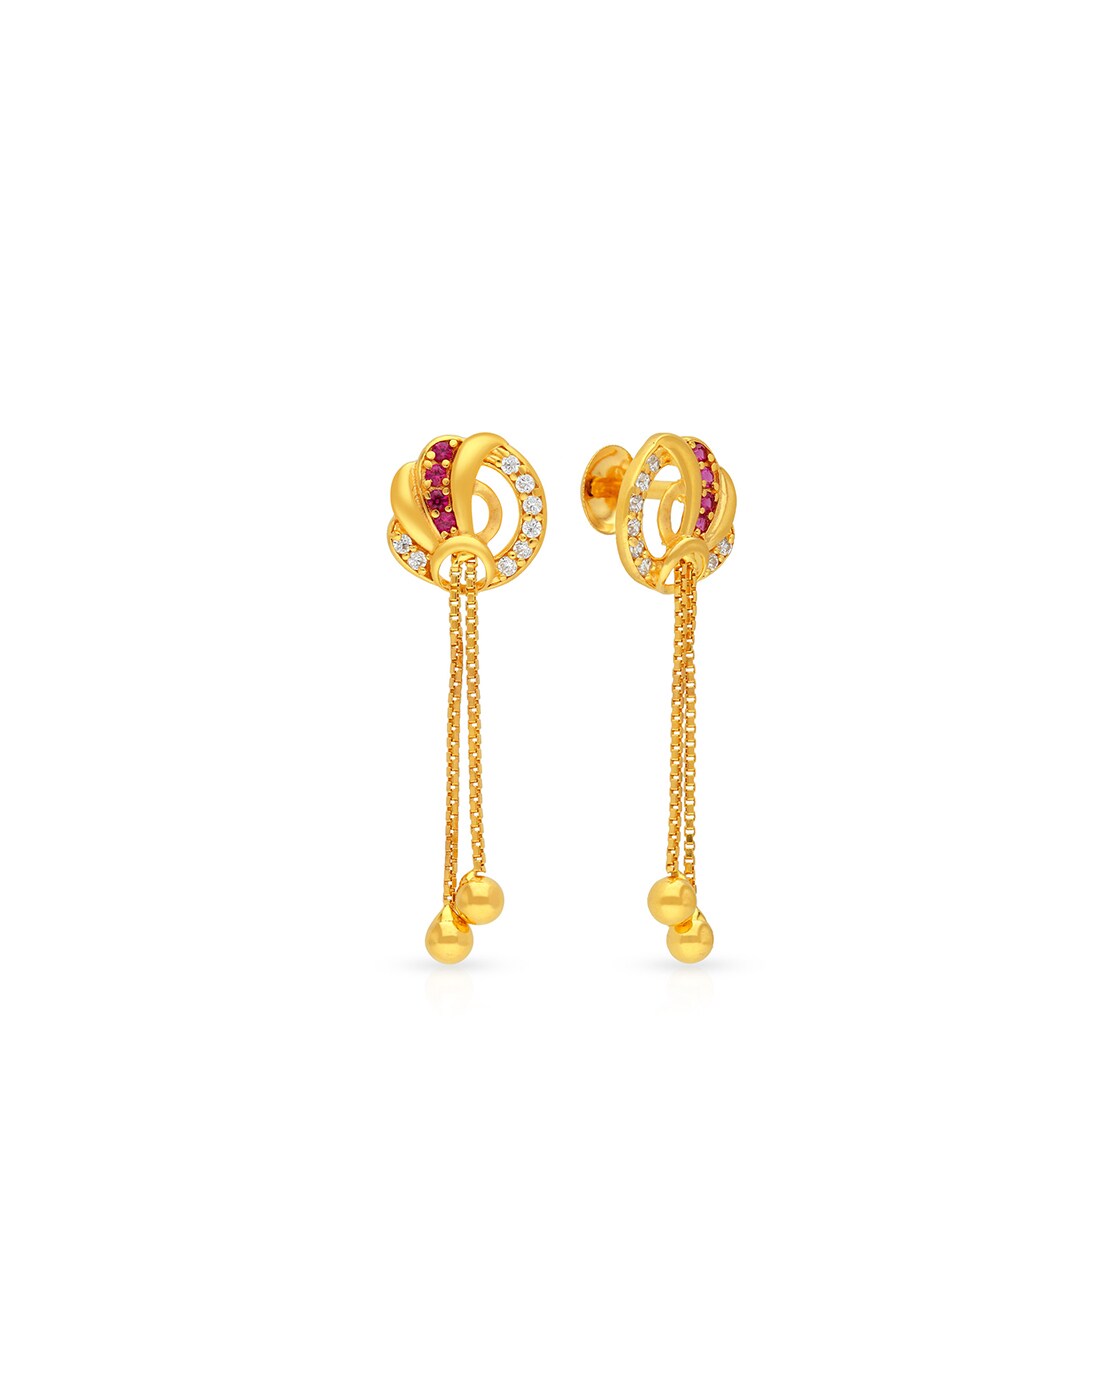 Buy 14 Kt, 18K , 22K Yellow Gold Dangle Drop Earrings, Hallmark Stamped  Handmade Traditional Long Earrings, 18K Gold Screw Back Women's Earrings  Online in India - Etsy